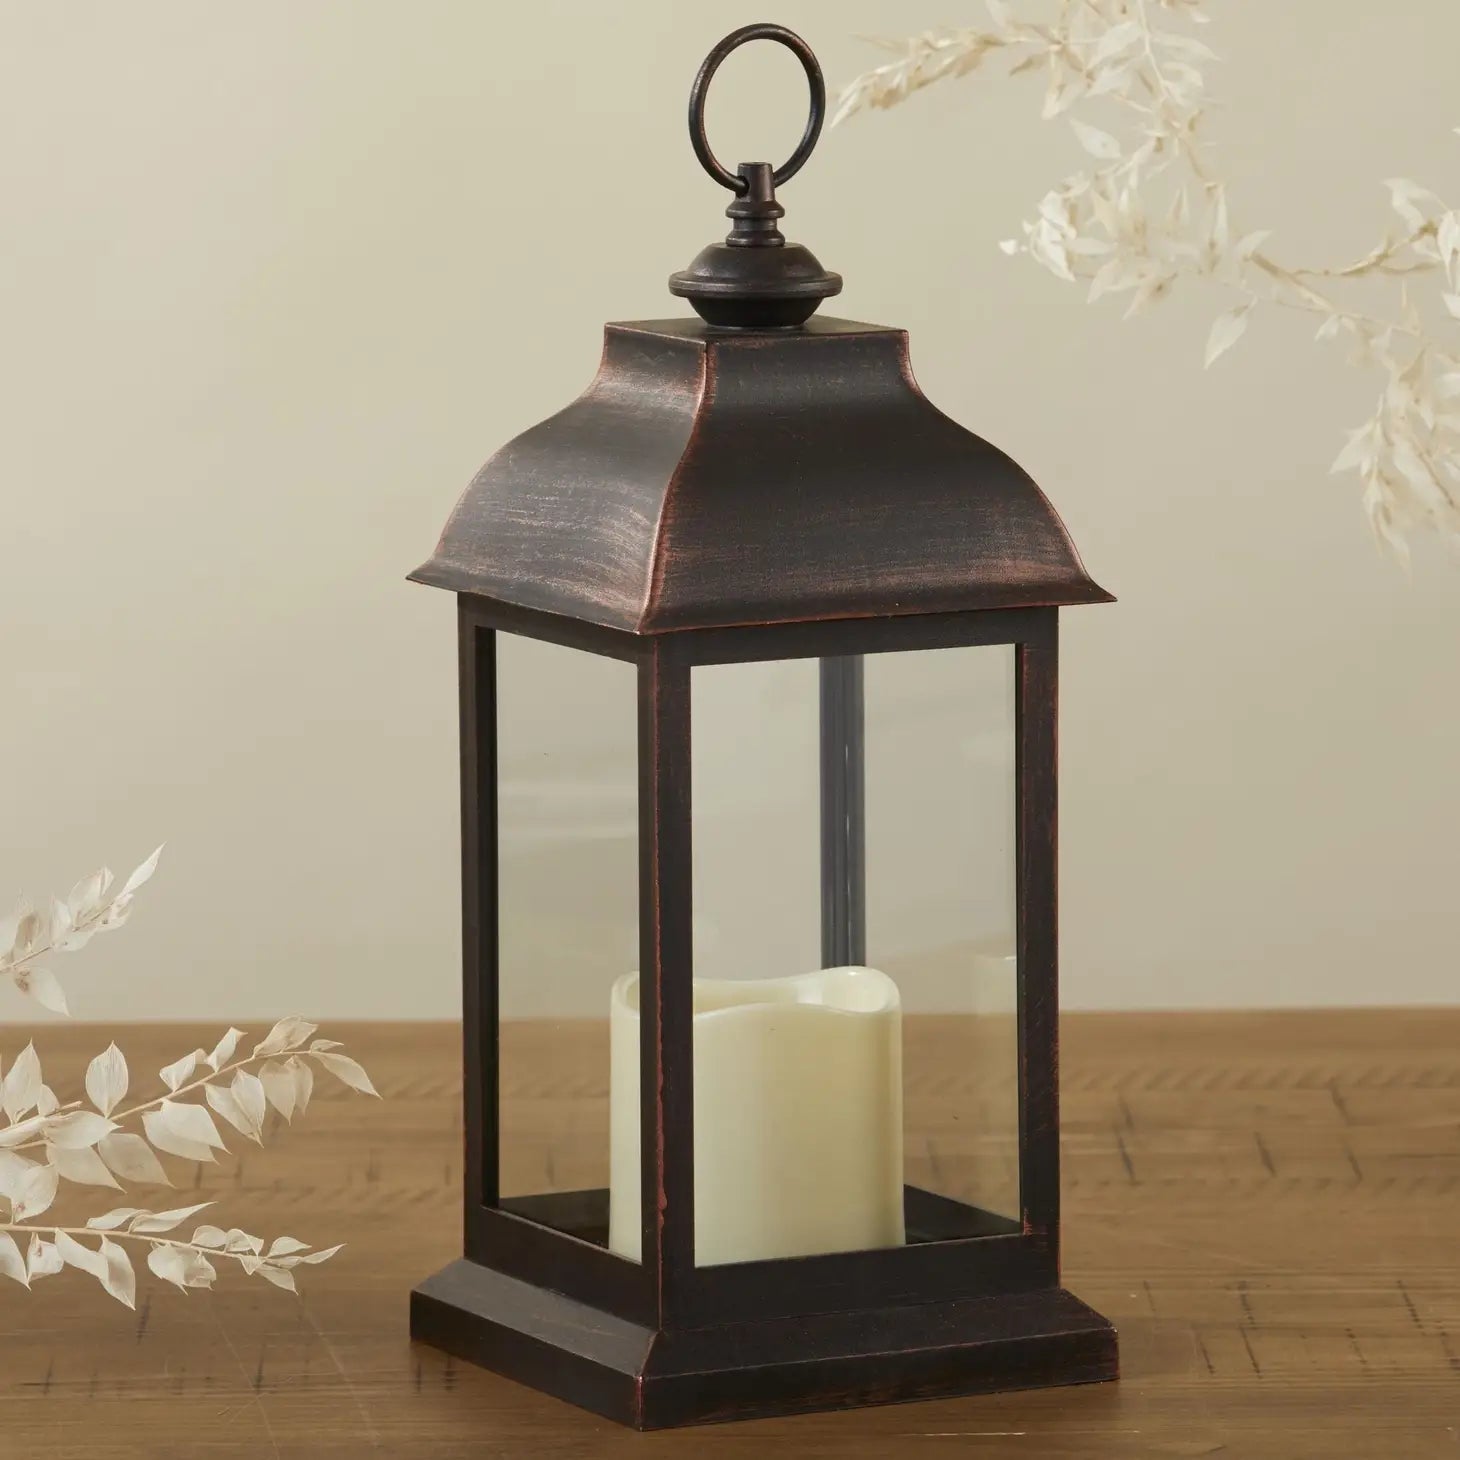 Led Vintage Decorative Copper Lantern - Manchester - Mindful Living Home